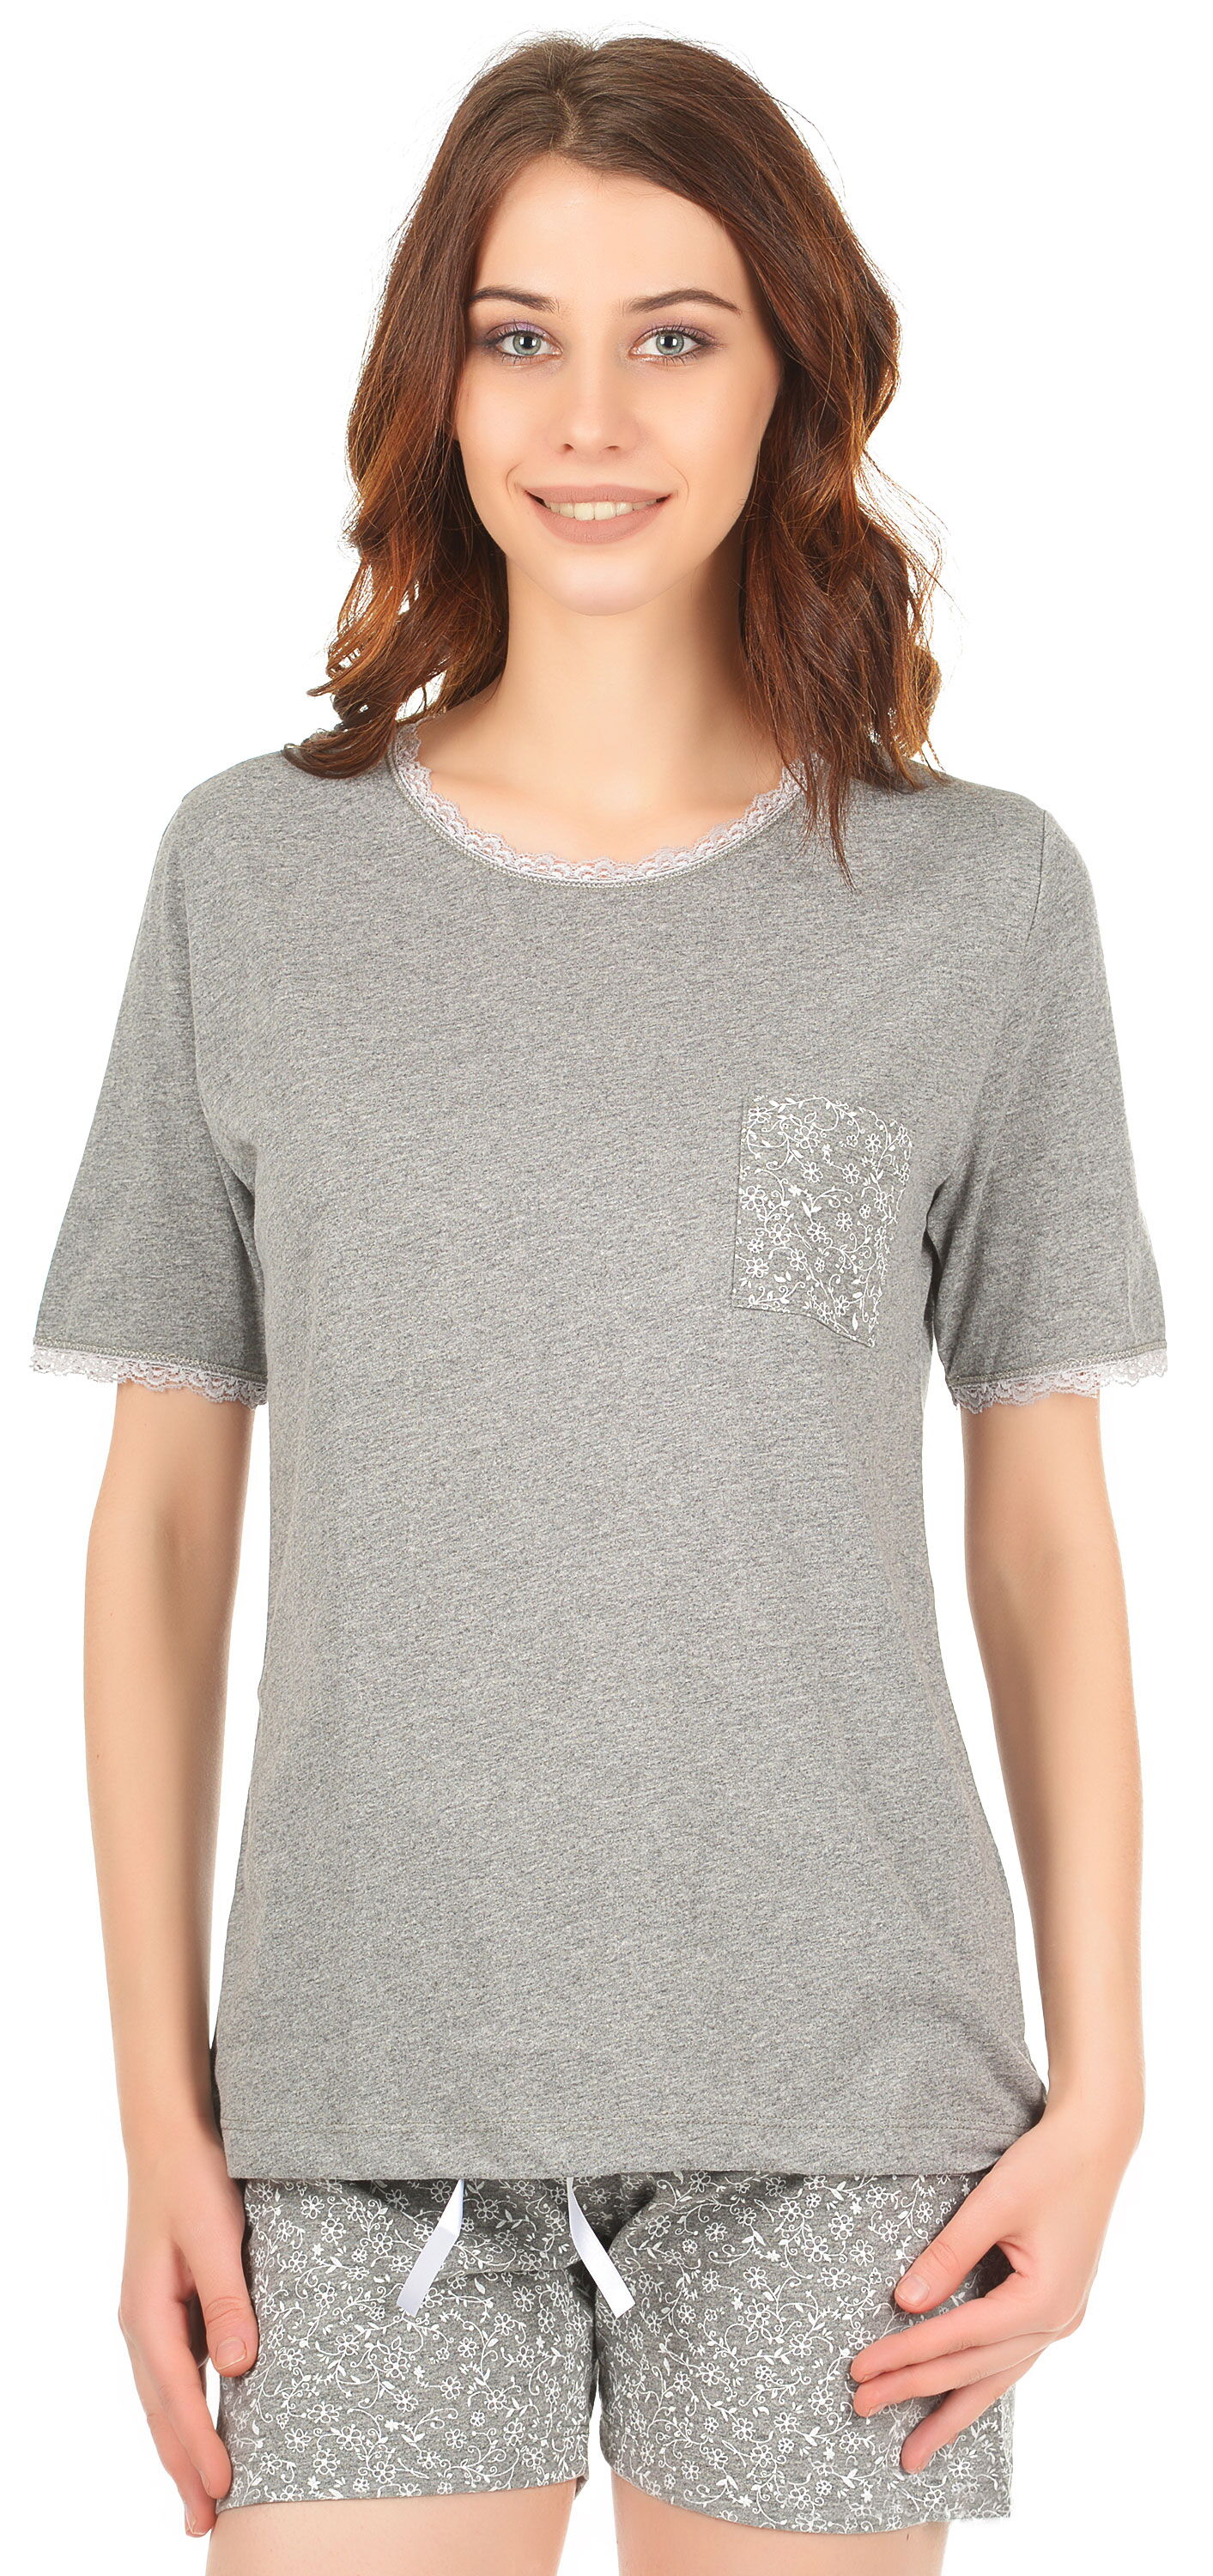  Комплект женский (футболка+шорты) MISS FIRST NINFEA серый - цена